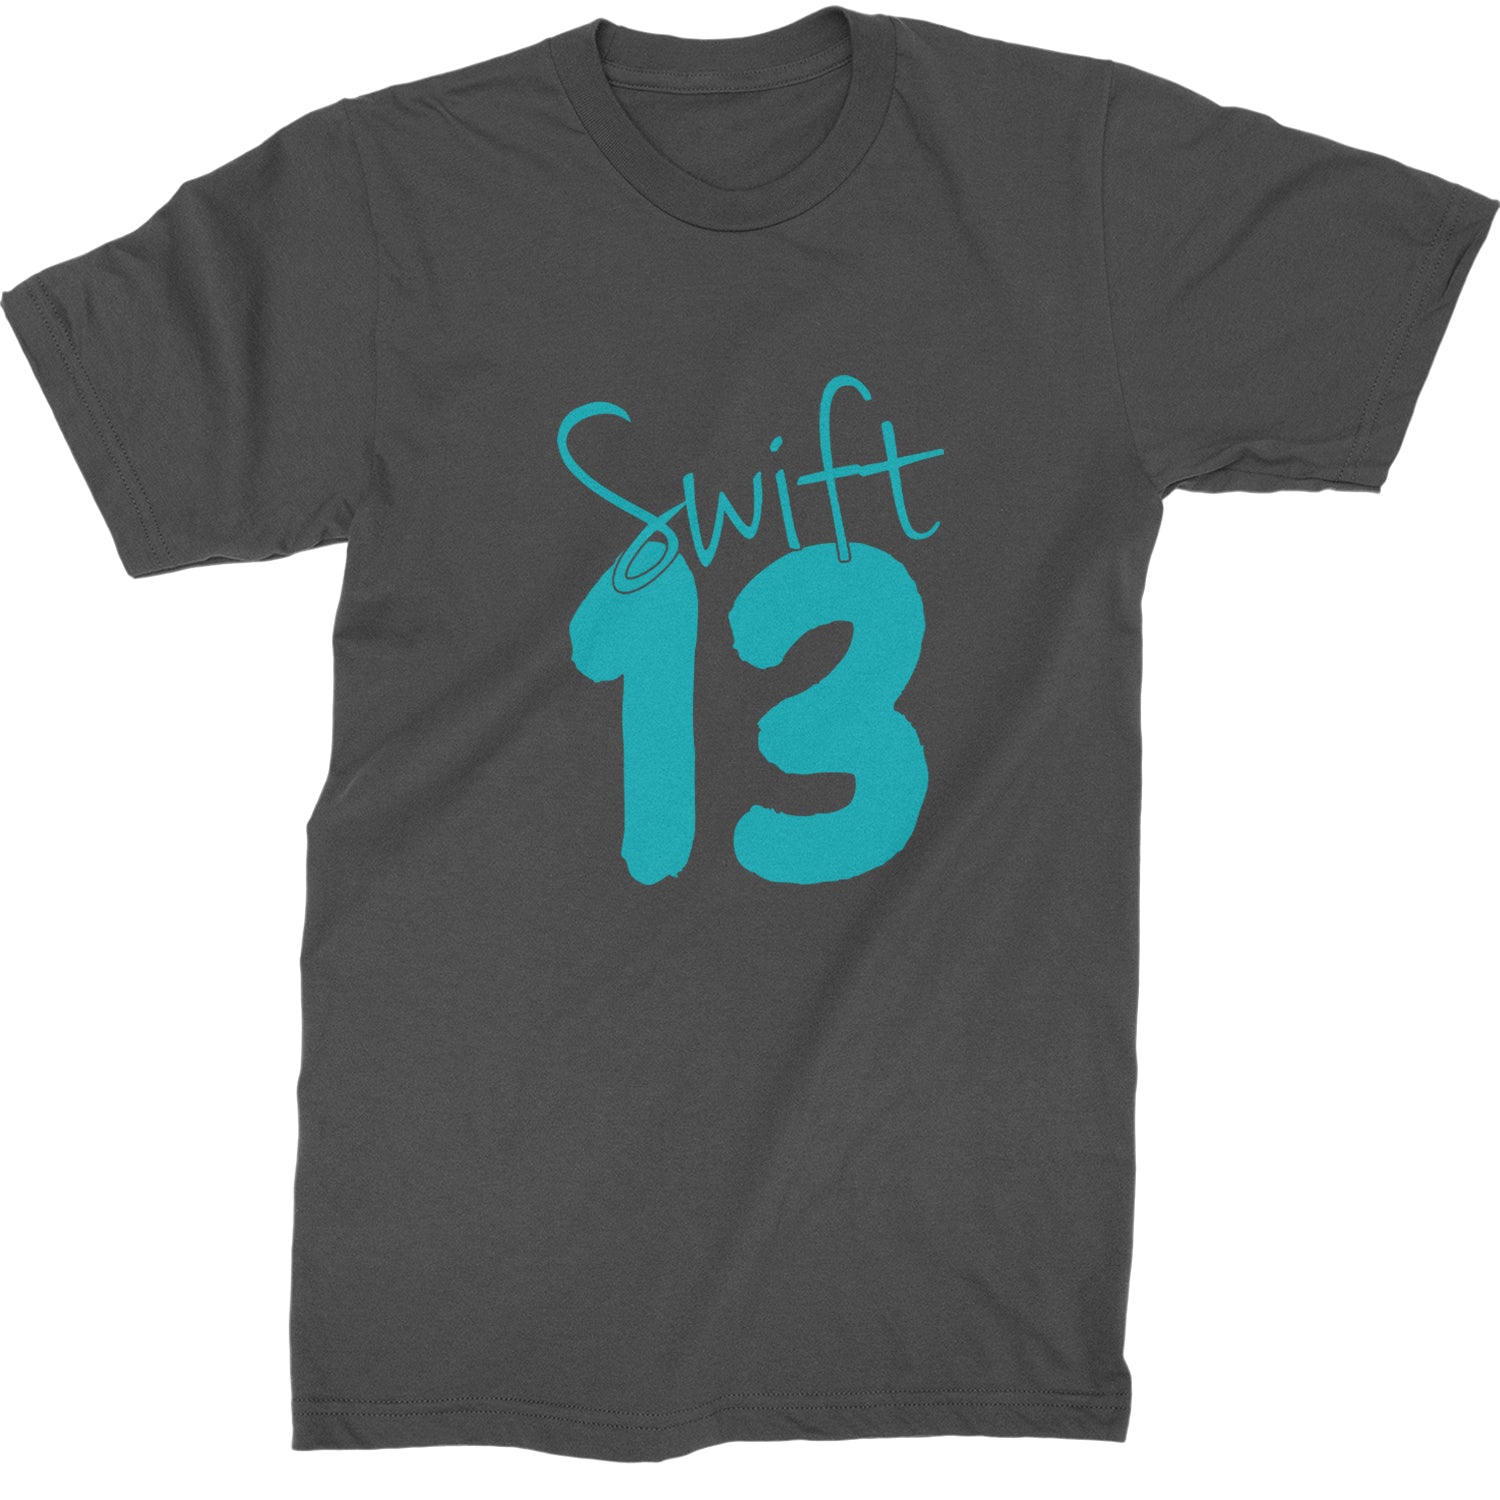 13 Swift 13 Lucky Number Era TTPD Mens T-shirt Black